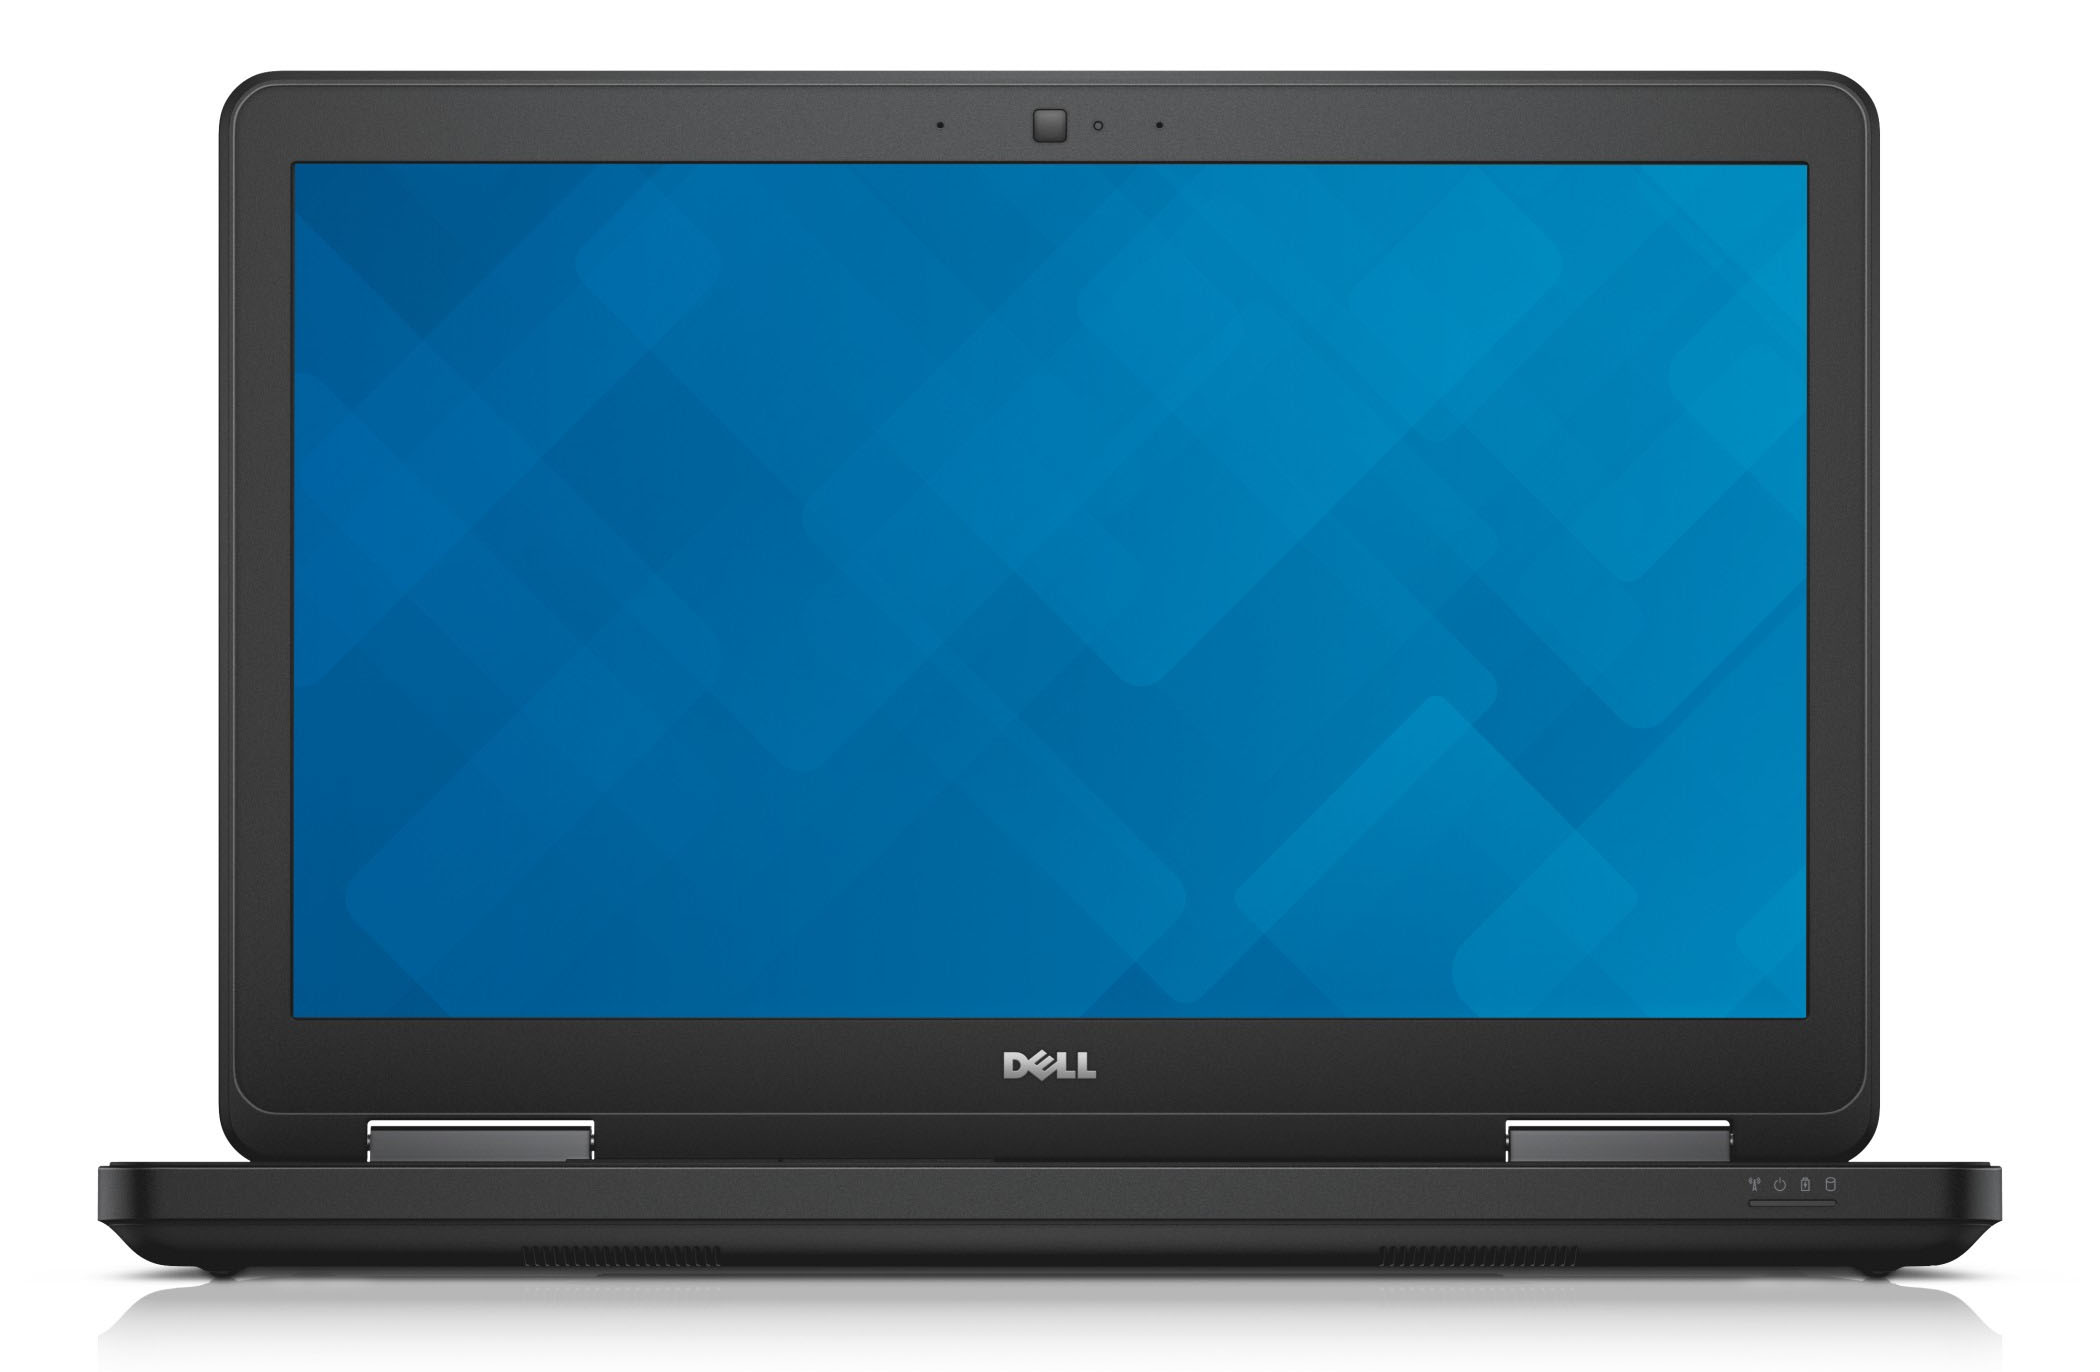 Dell Latitude E5540 - Specs, Tests, and Prices | LaptopMedia.com